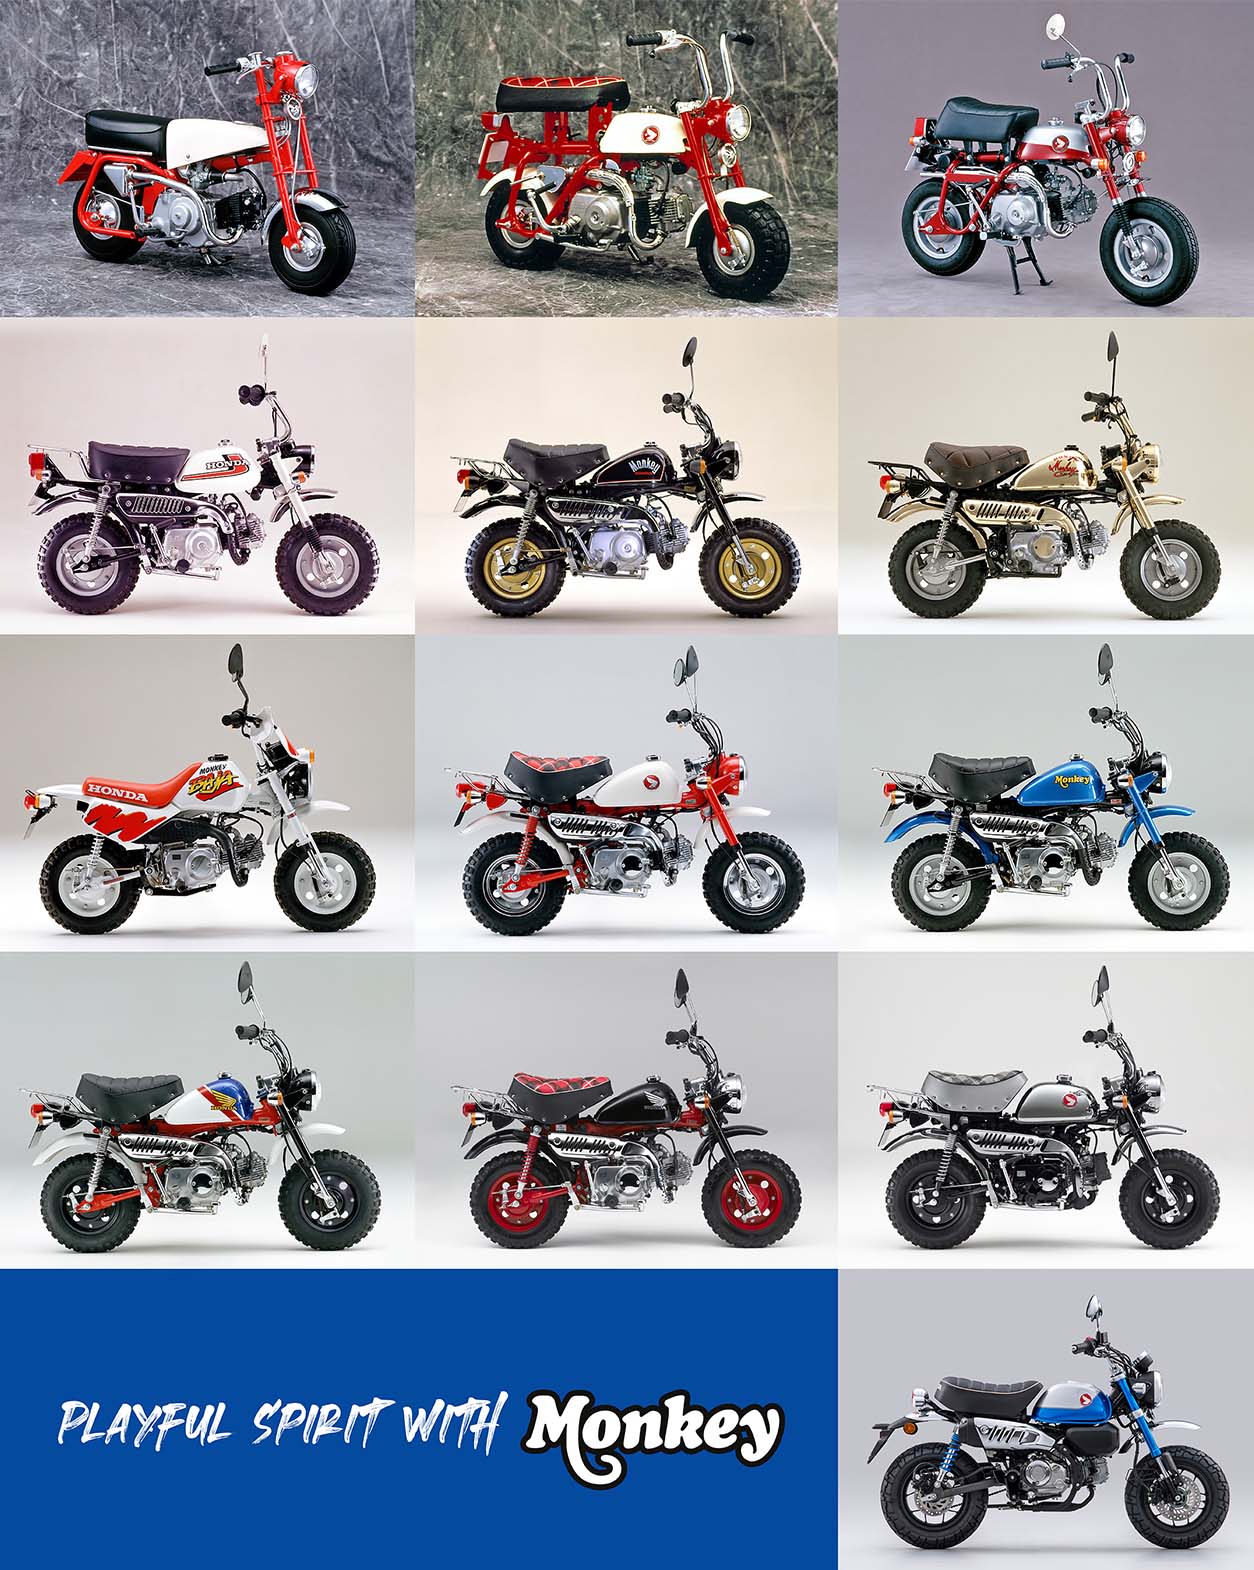 Honda Monkey Bike through the years